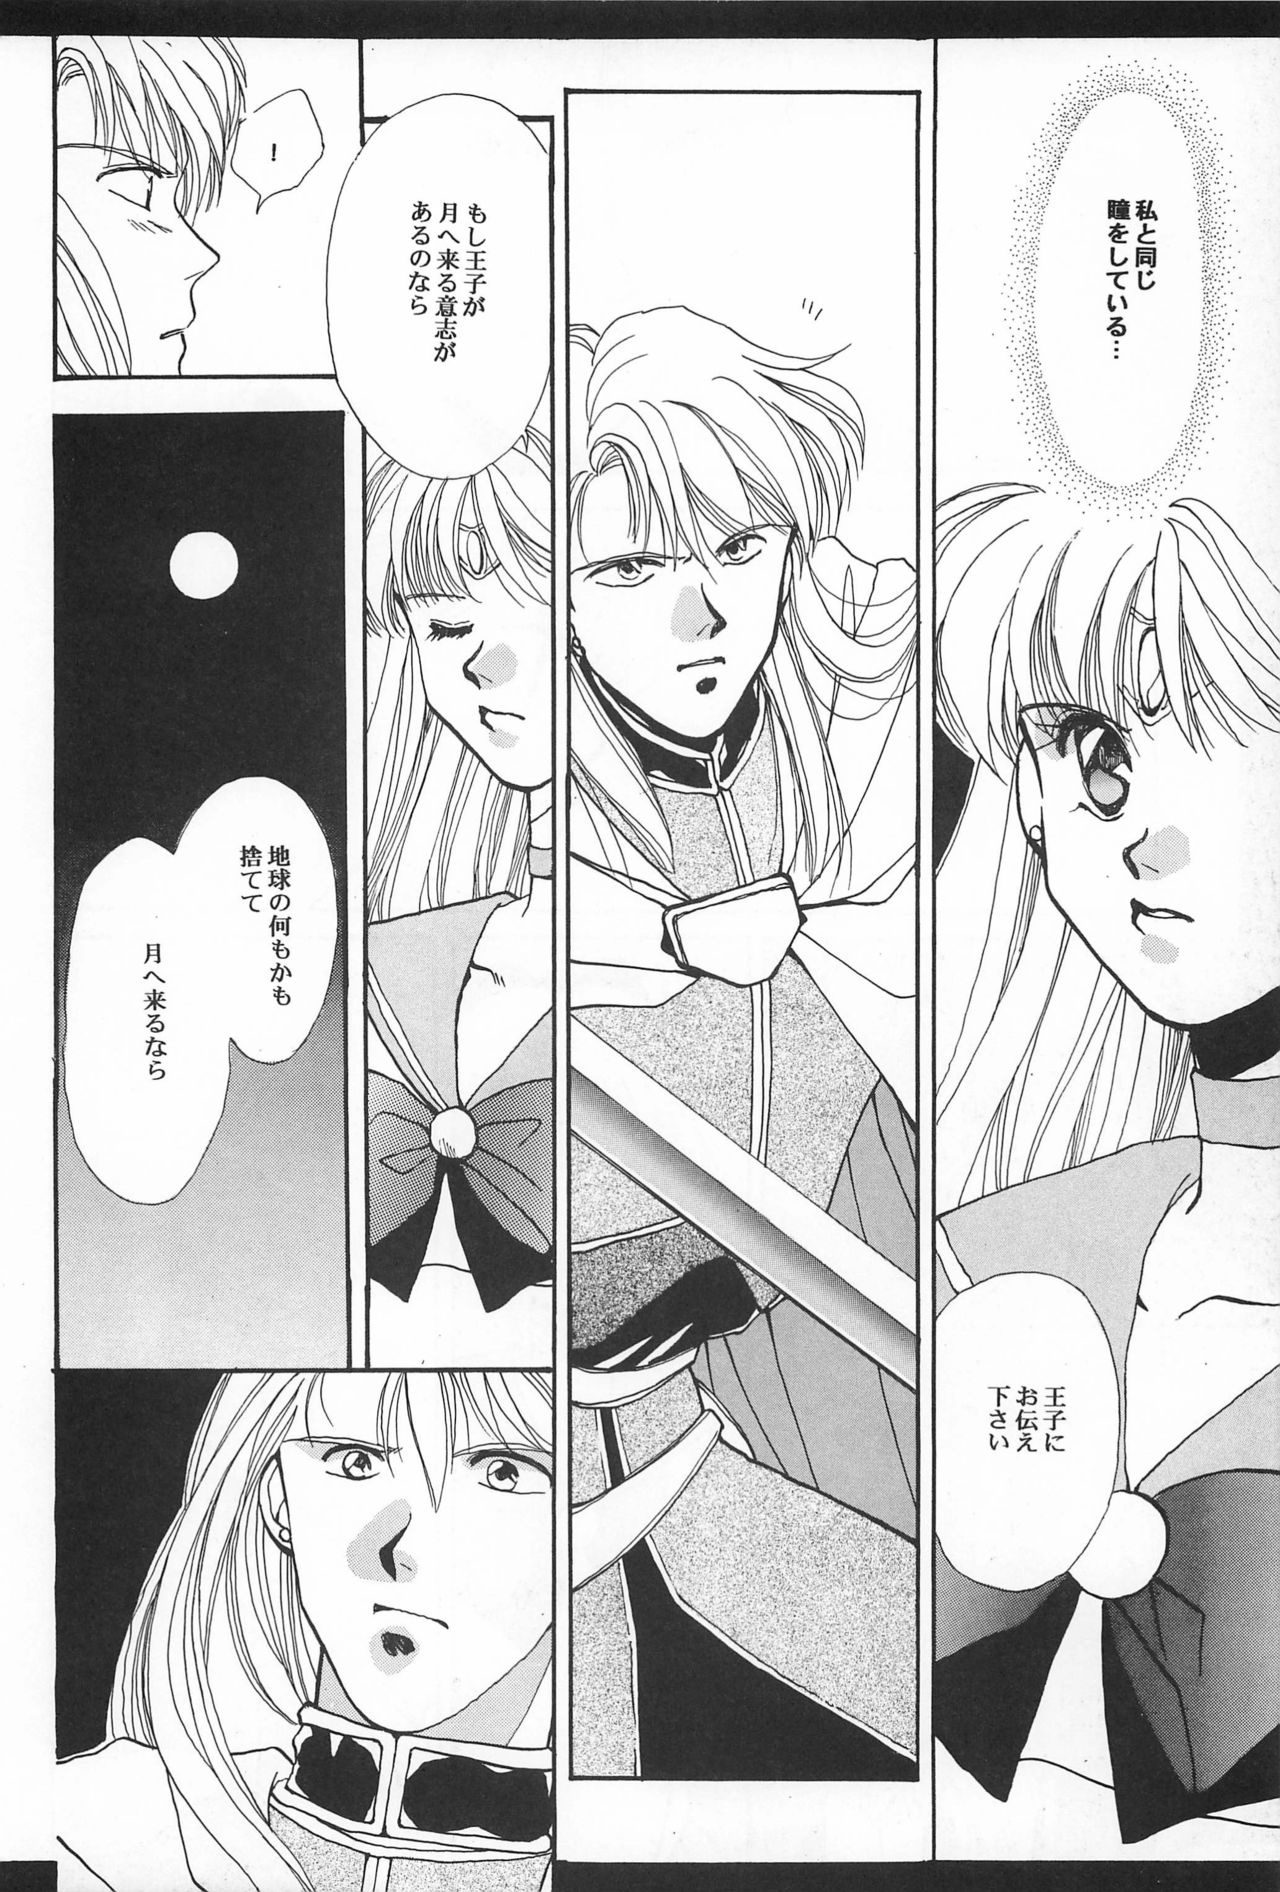 [Hello World (Muttri Moony)] Kaze no You ni Yume no You ni - Sailor Moon Collection (Sailor Moon) 45